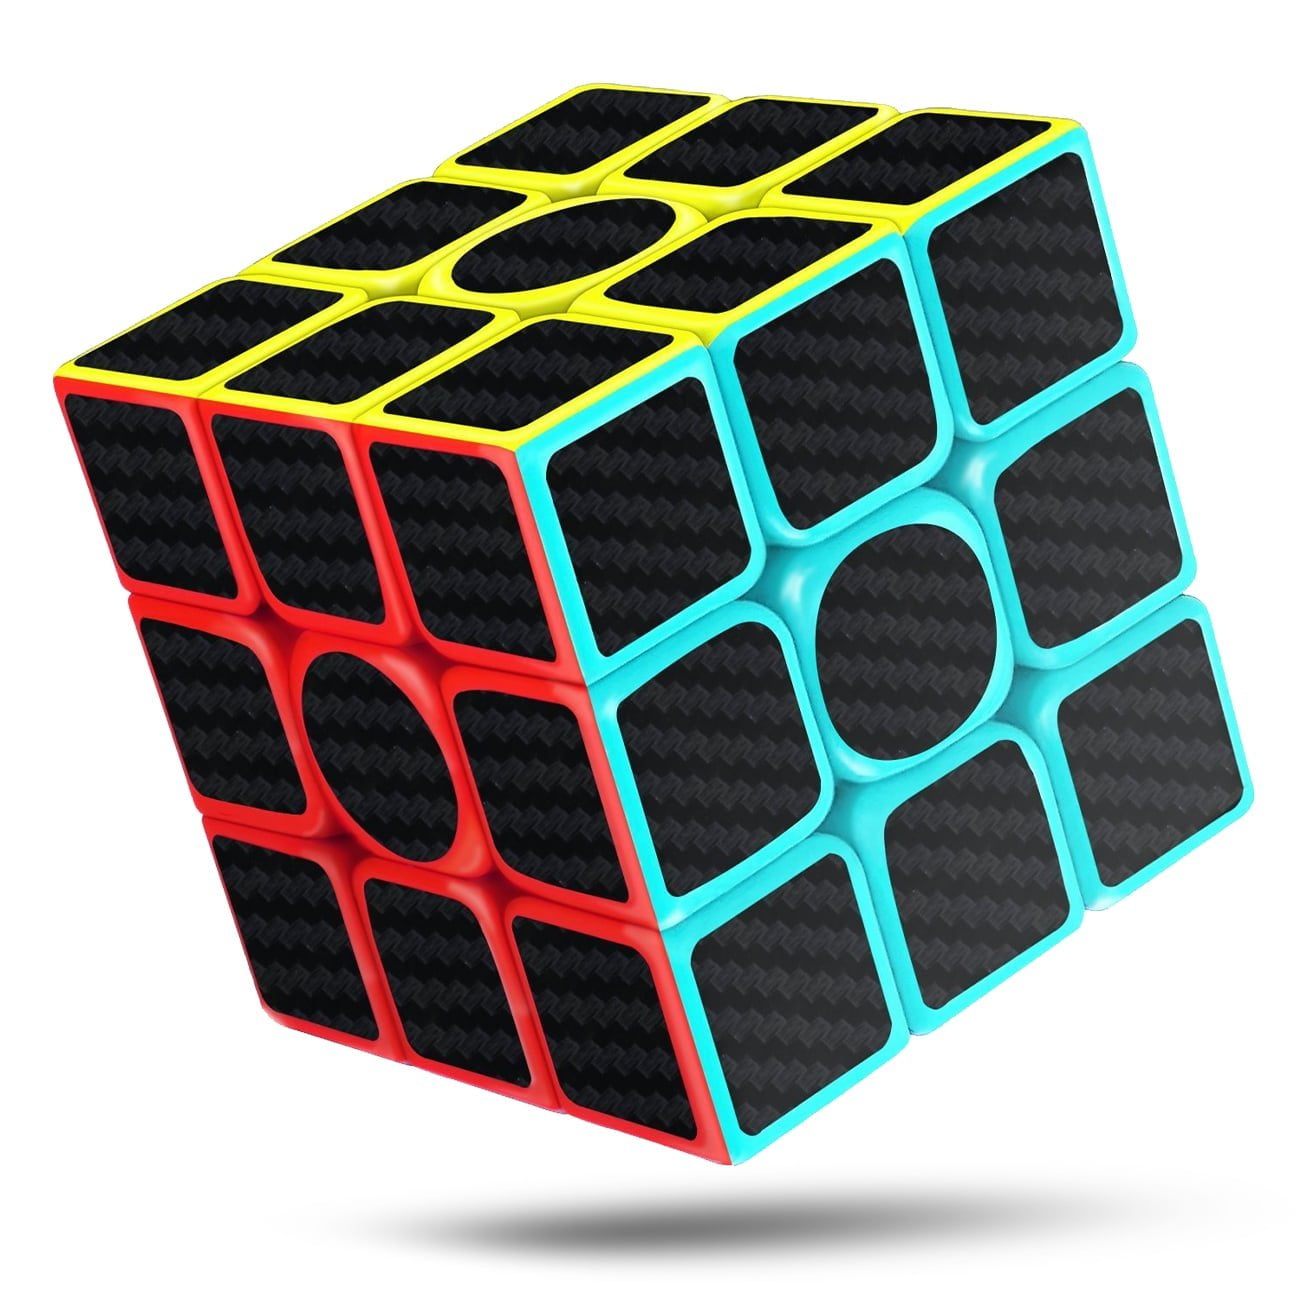 Original Rubiks Cube Junior Hasbro Children Magic Mind Kid Toy Rubix Puzzle Game 